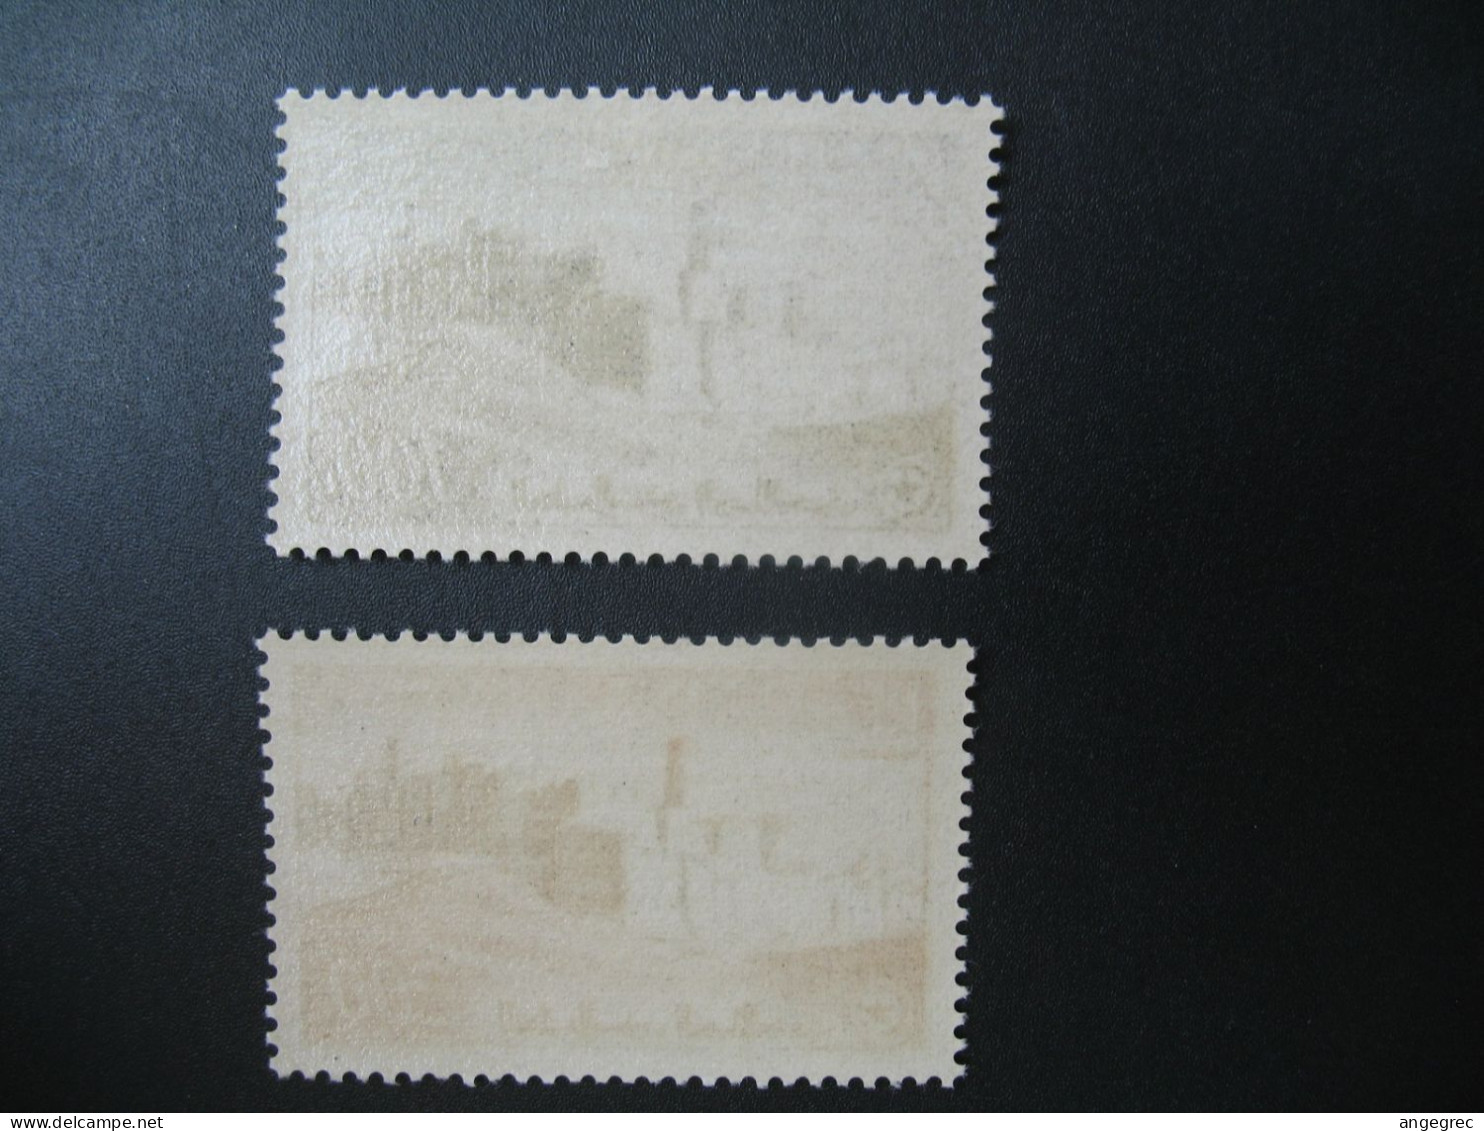 Tunisie Stamps French Colonies N° PA 20 - 21 Neuf *   Voir Photo - Gebruikt